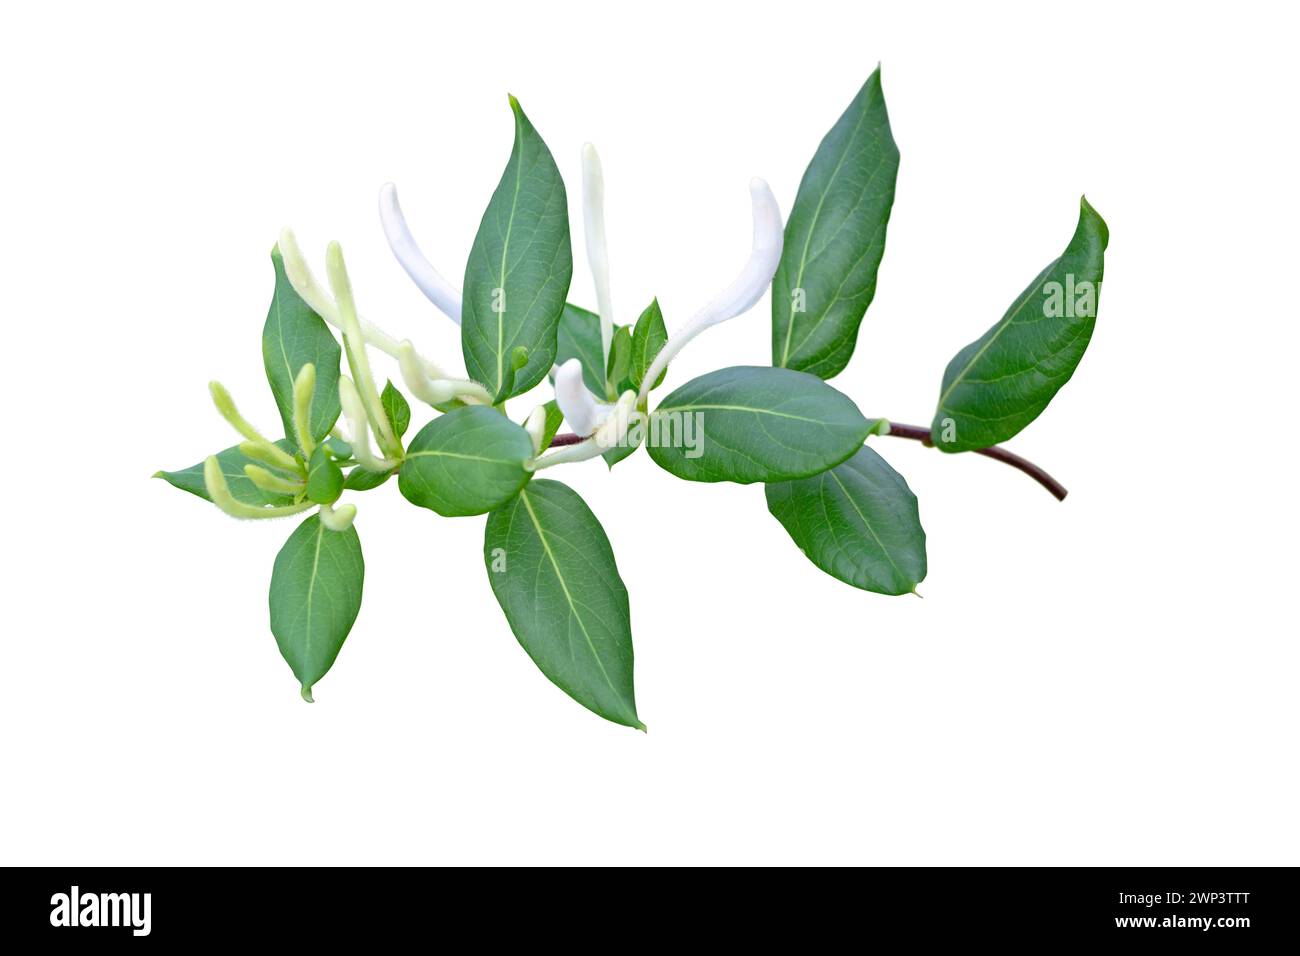 Geißblatt oder Lonicera japonica blühender Zweig isoliert auf weiß. Weiße, duftende Lonicera-Blütenknospen. Stockfoto